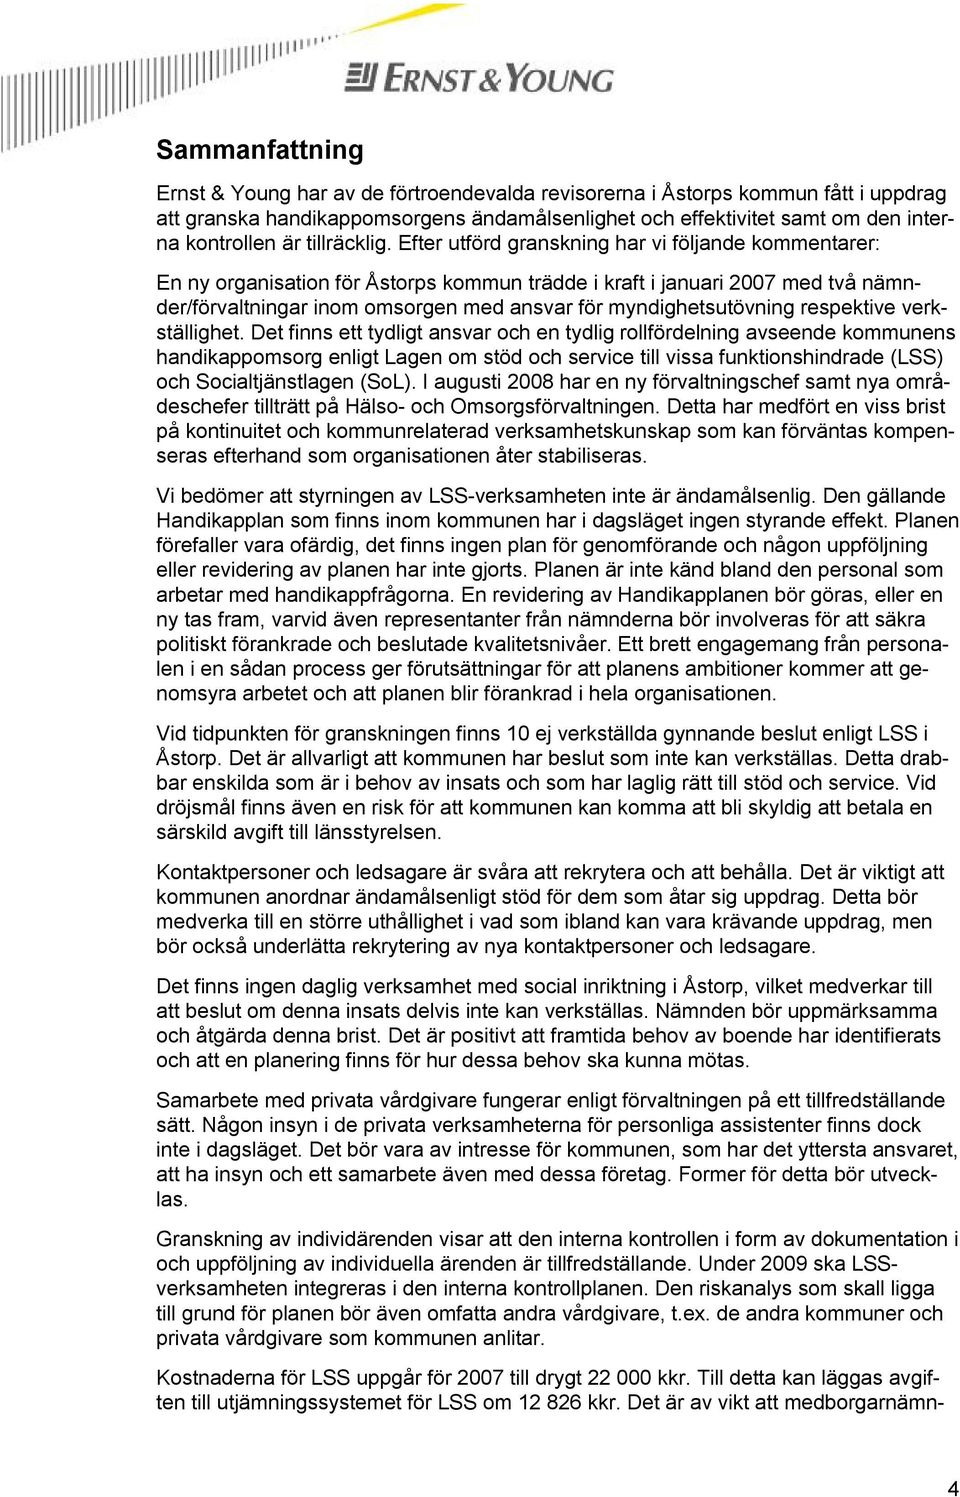 Efter utförd granskning har vi följande kommentarer: En ny organisation för Åstorps kommun trädde i kraft i januari 2007 med två nämnder/förvaltningar inom omsorgen med ansvar för myndighetsutövning